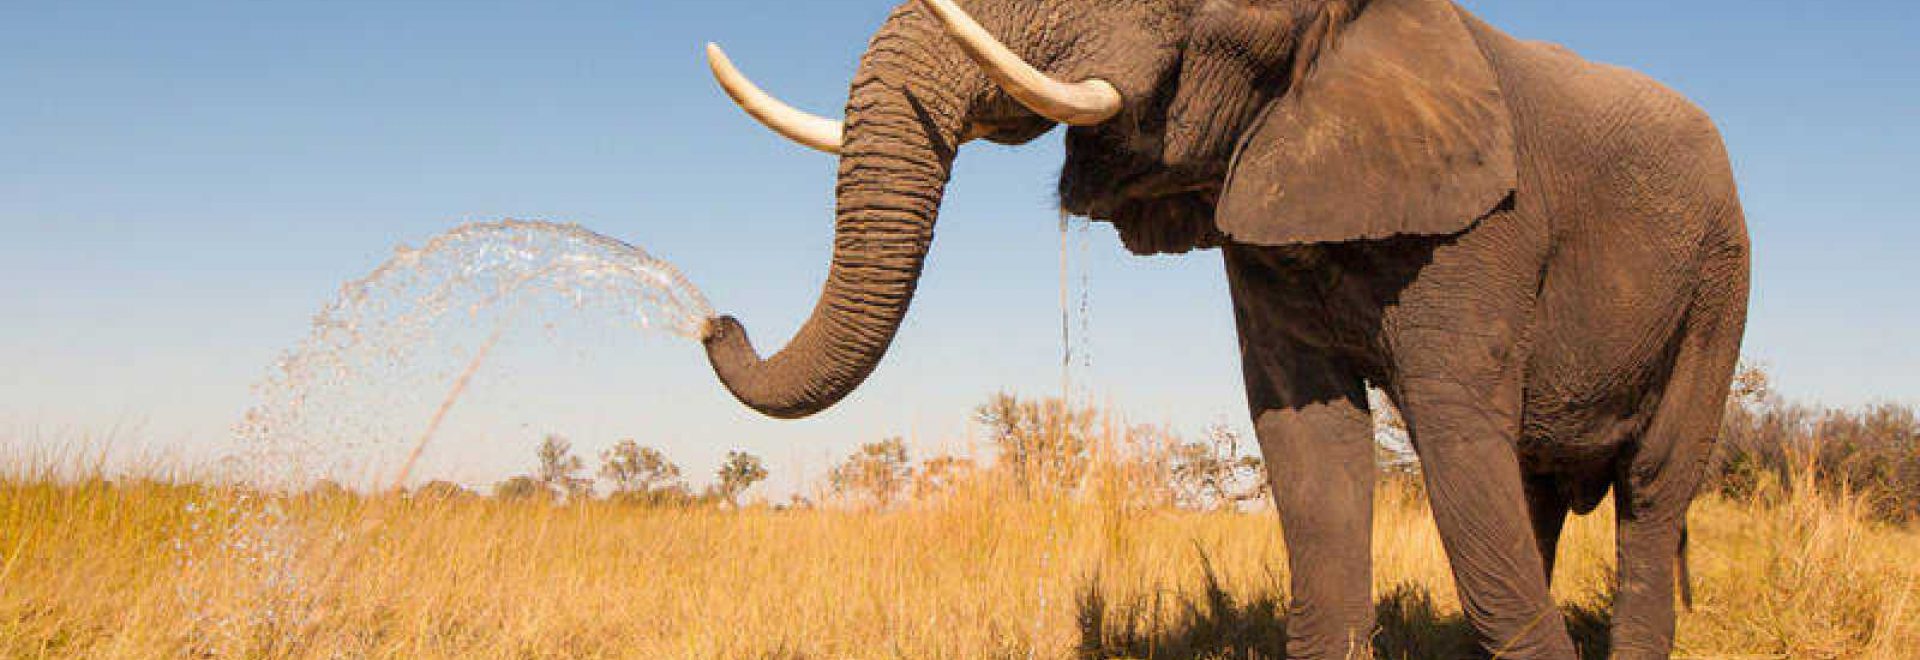 El elefante encadenado